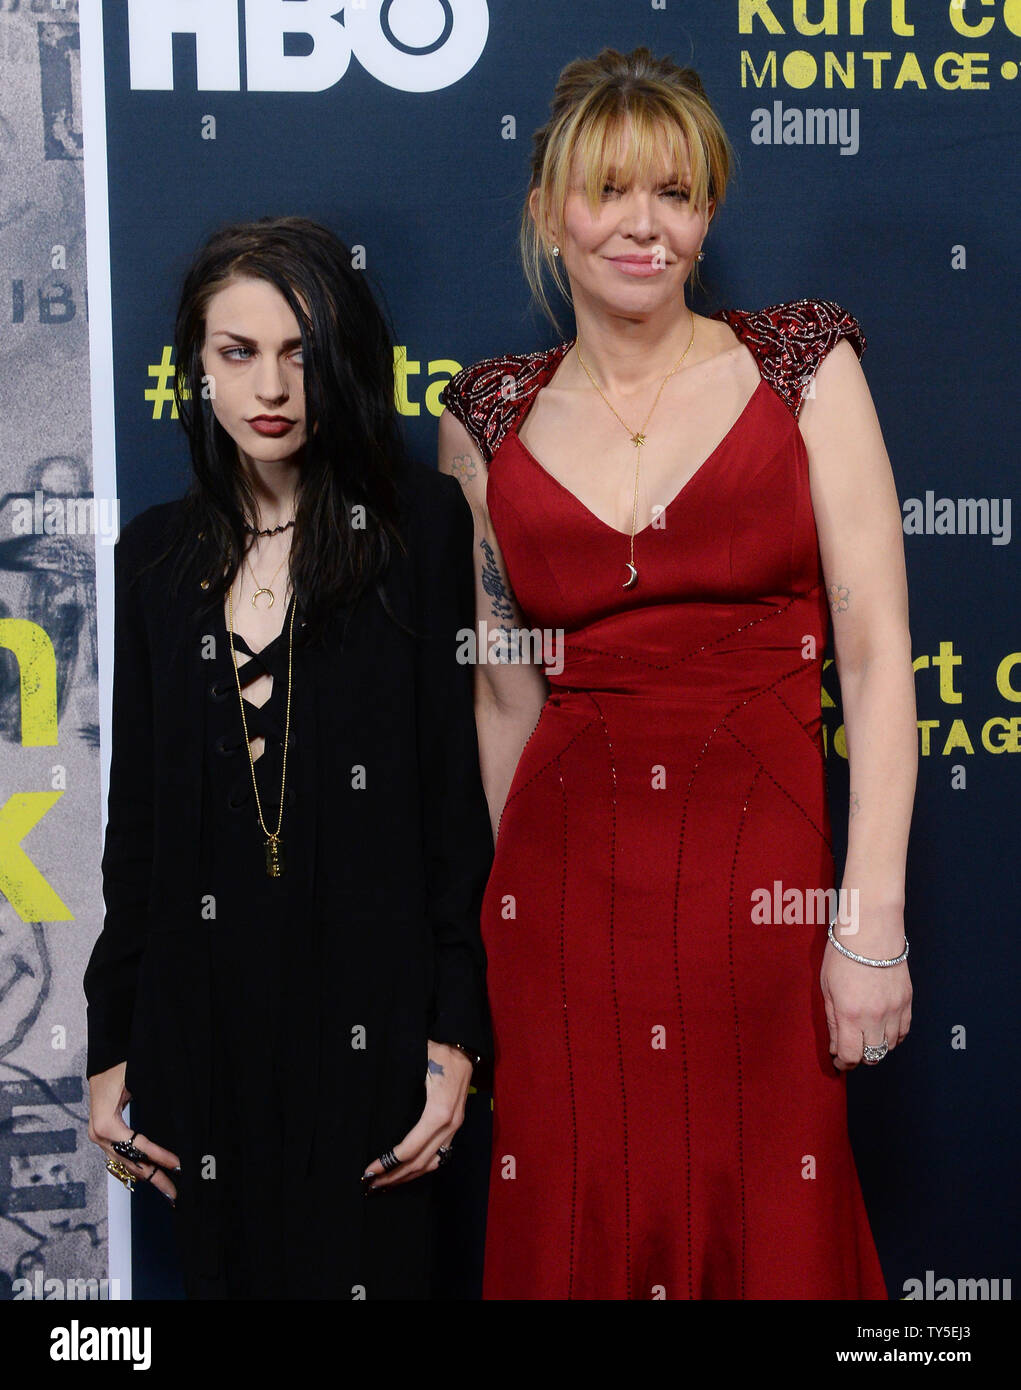 Cantante y compositora de rock alternativo Courtney Love (R) y su hija  Frances Bean Cobain asistir al estreno del documental 'autorizado Kurt  Cobain: Montaje de Heck' en el Teatro Egipcio de Hollywood